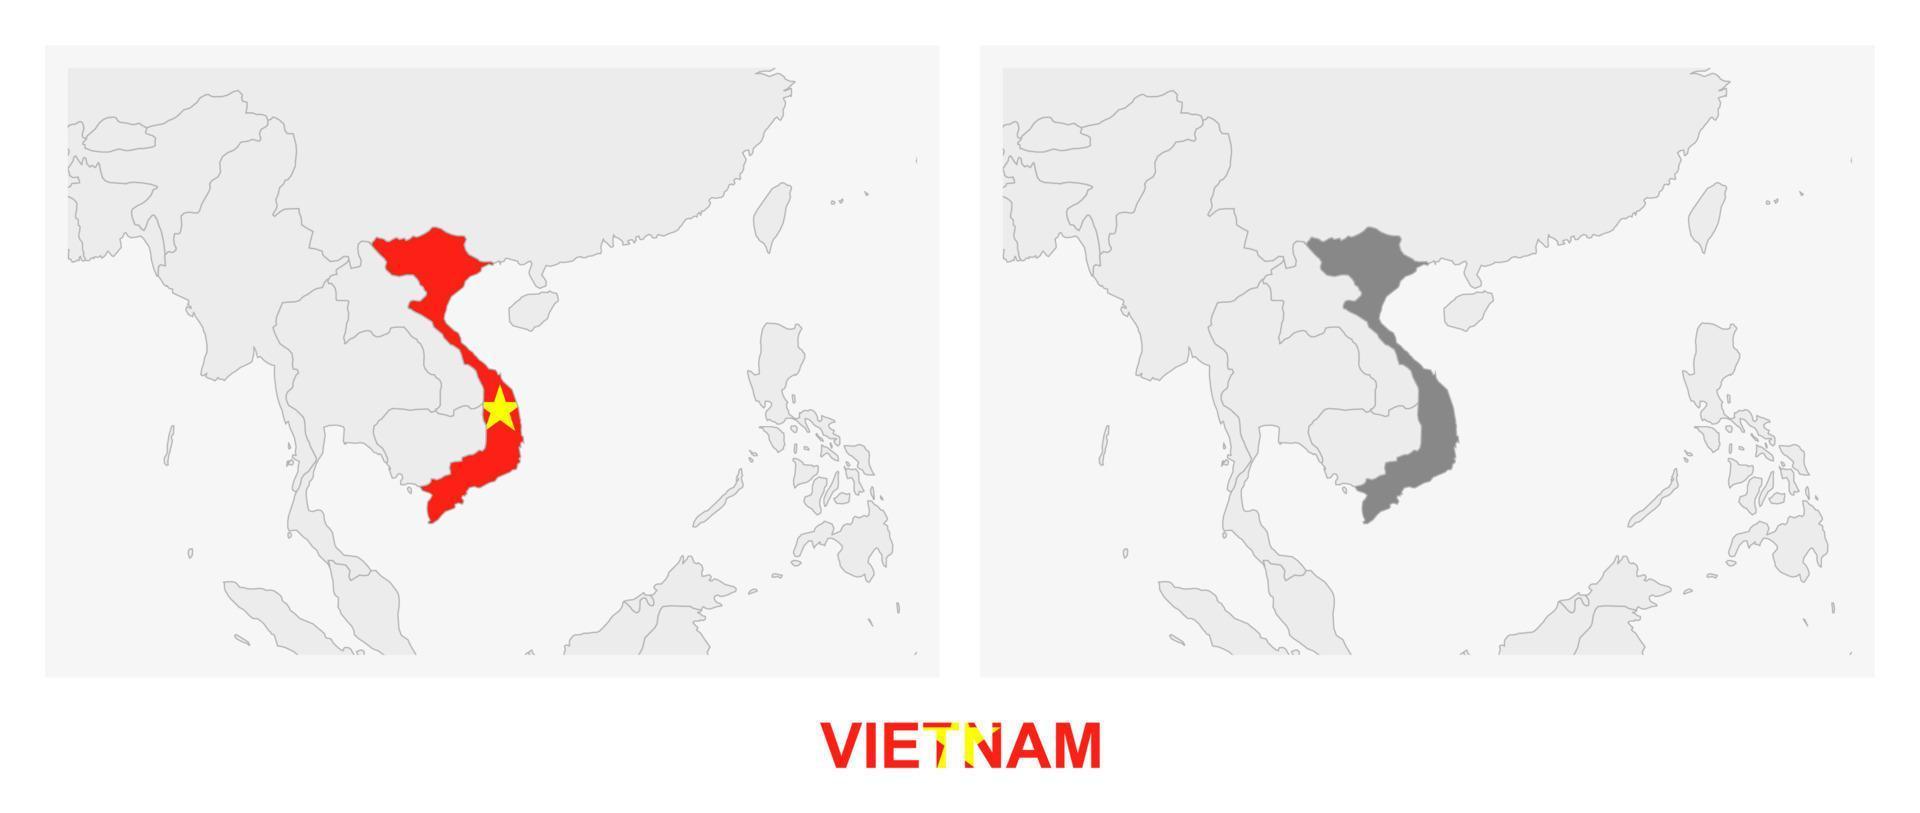 deux versions de la carte du vietnam, avec le drapeau du vietnam et surlignées en gris foncé. vecteur